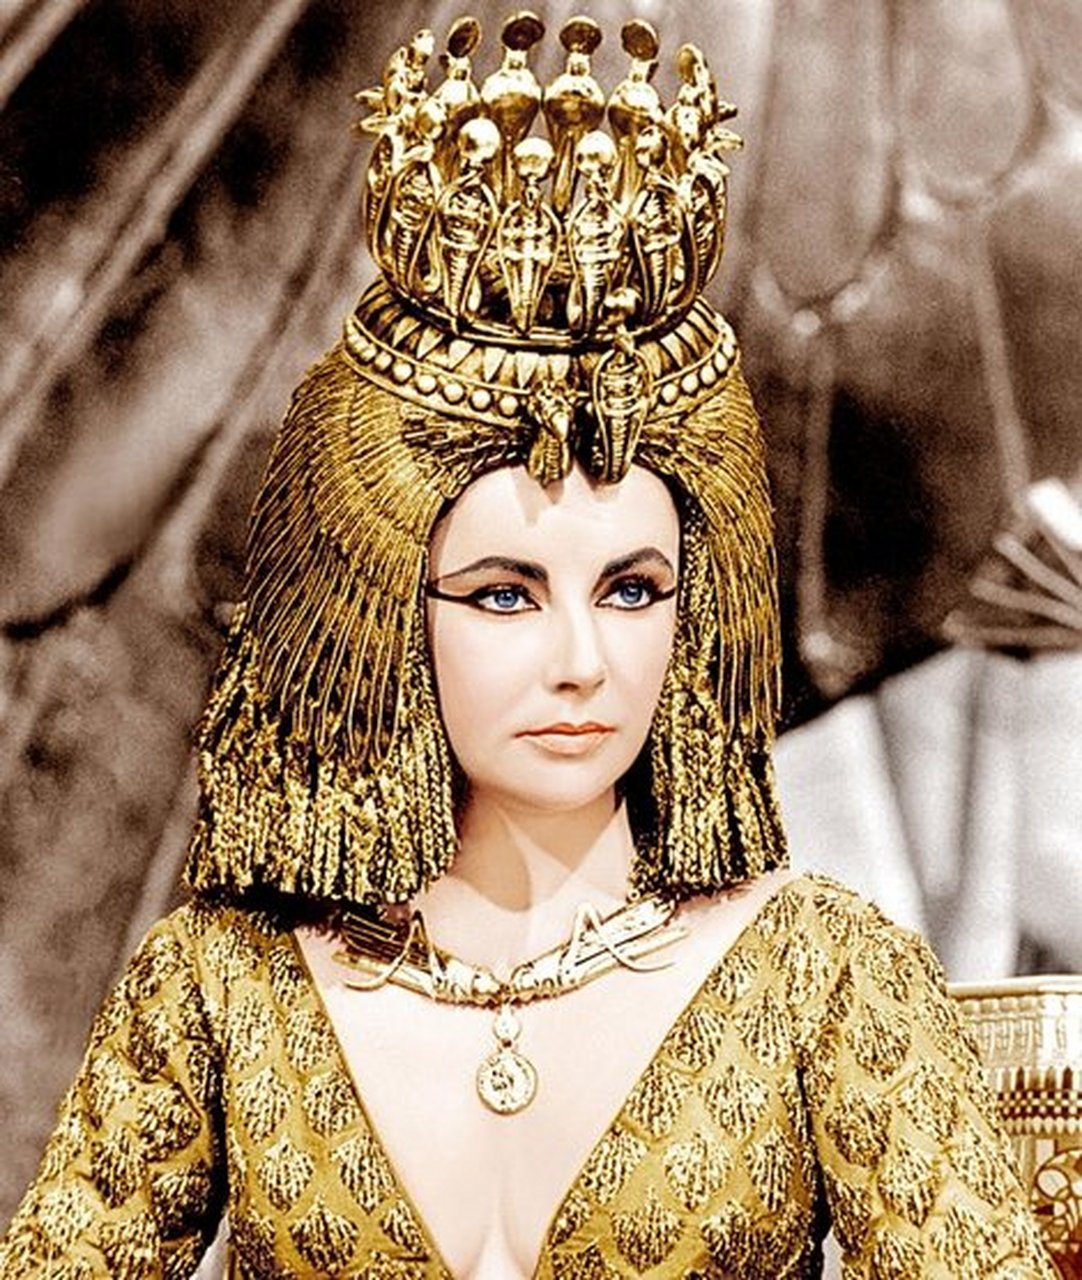 【埃及艳后与马克安东尼的爱情】  埃及艳后克莱奥帕特拉,用美貌征服